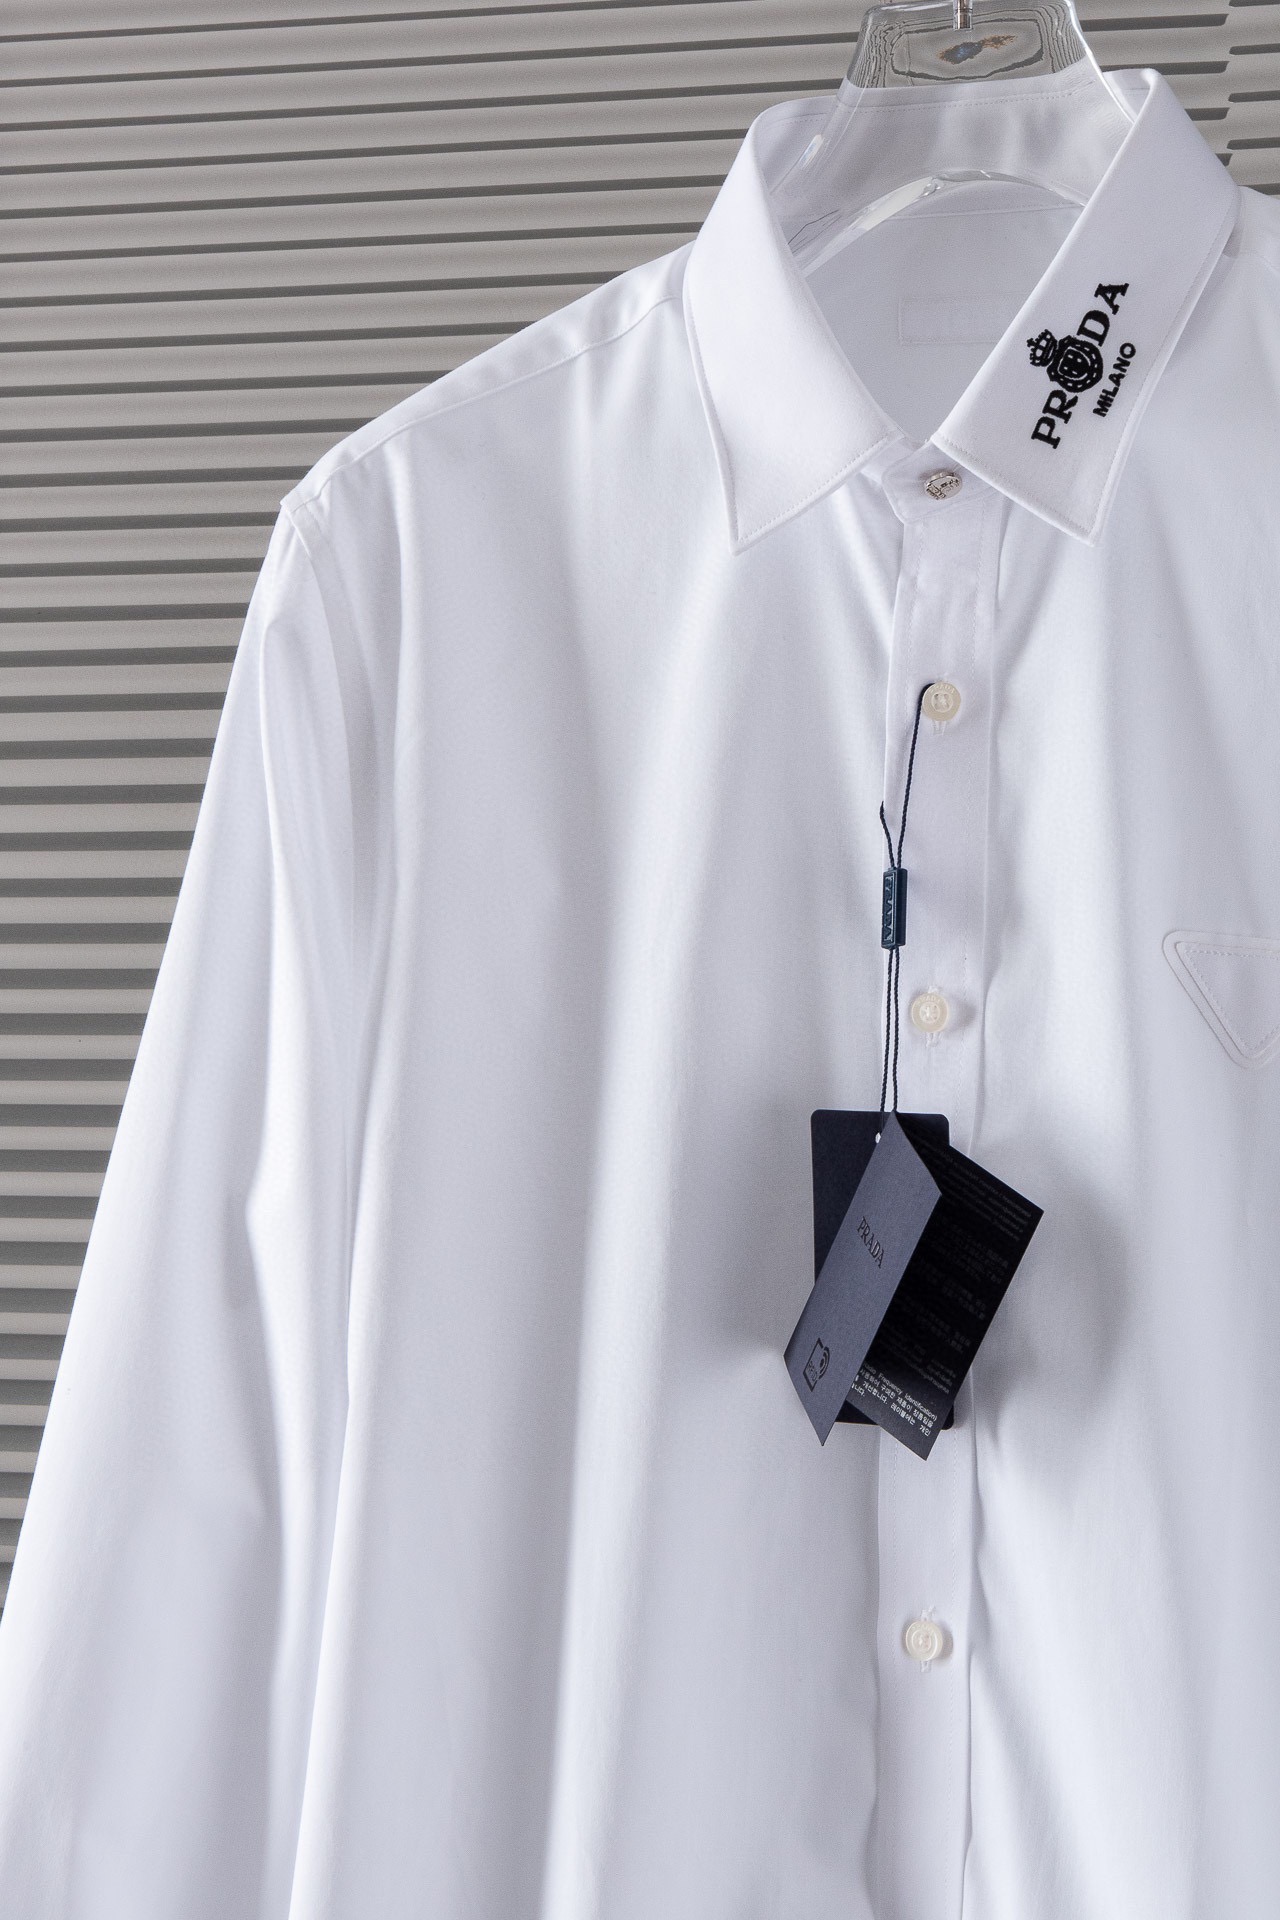 New#PRADA普拉达高品质的珍藏级进口高织棉男士长袖衬衫!24ss春夏新款高品质的奢品者首推珍藏级长